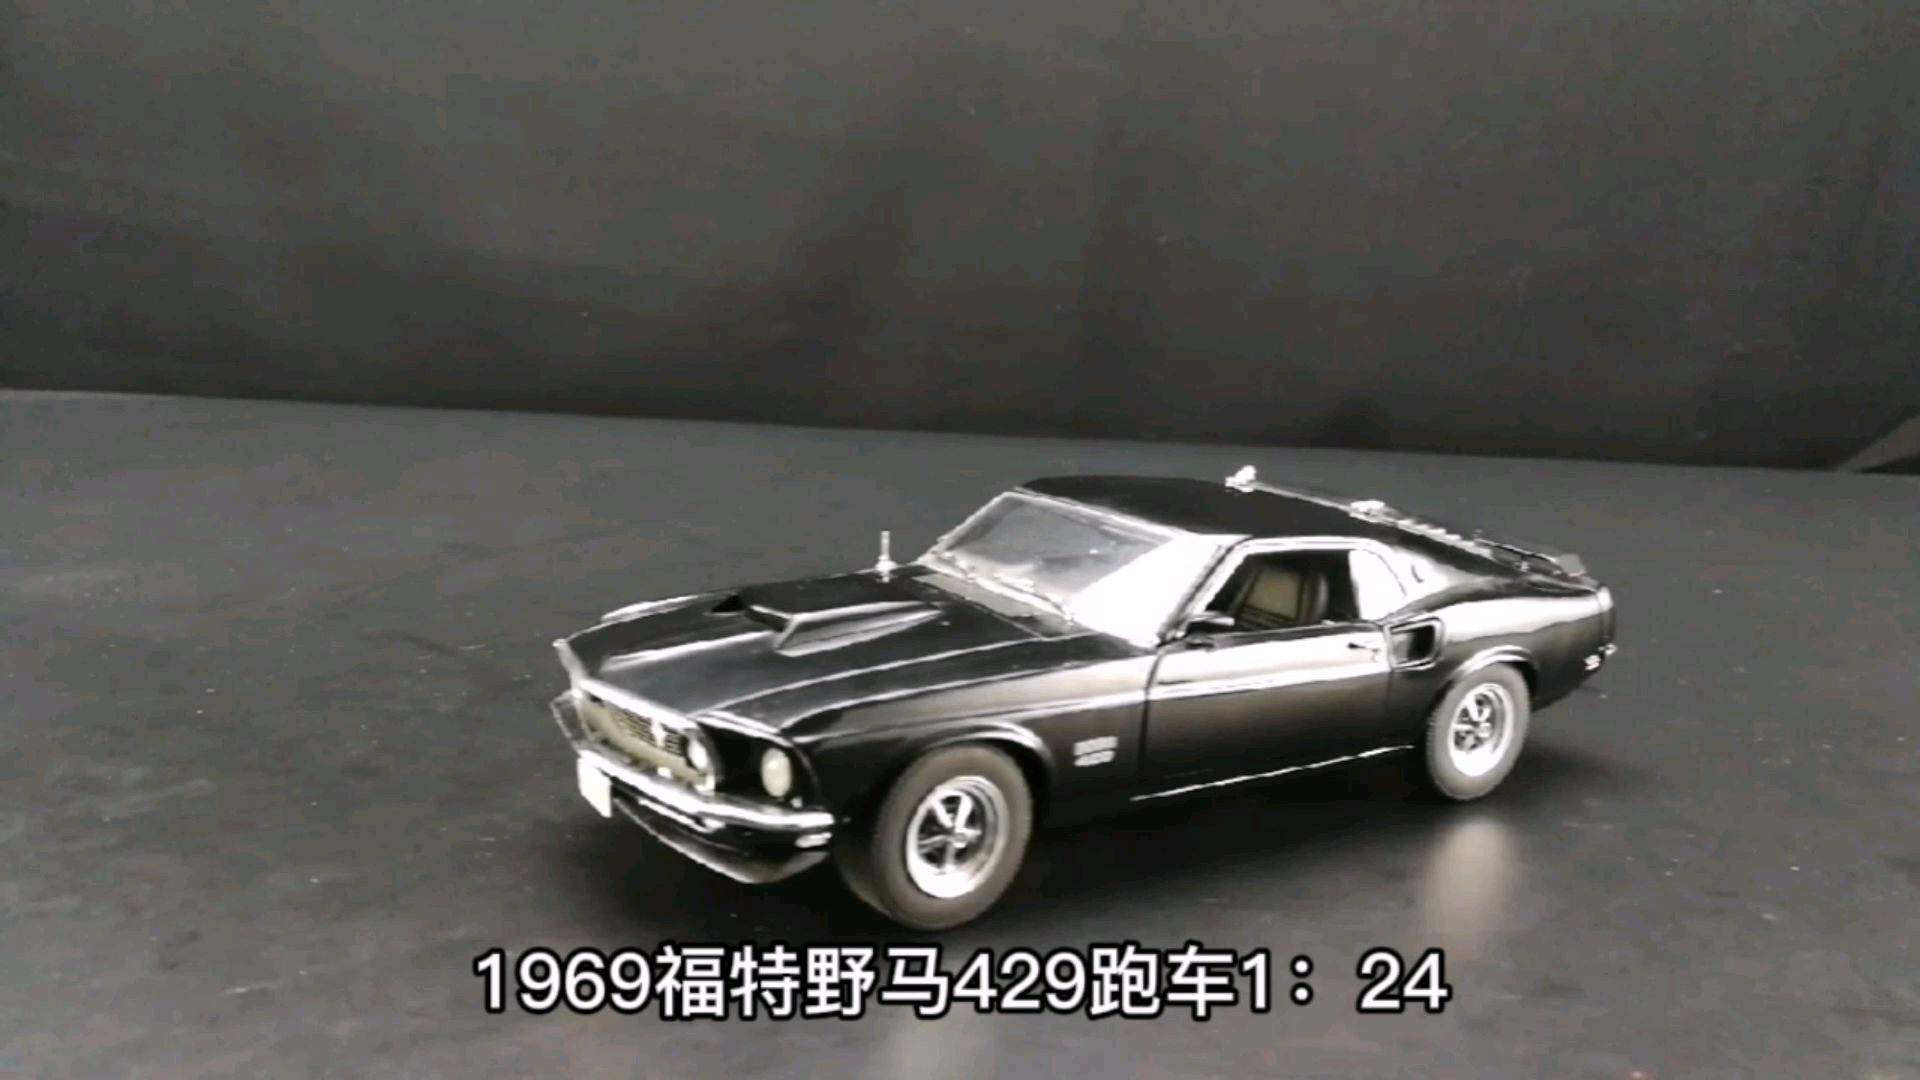 1969福特野马429跑车1：24，东晓汽车模型收藏馆藏品